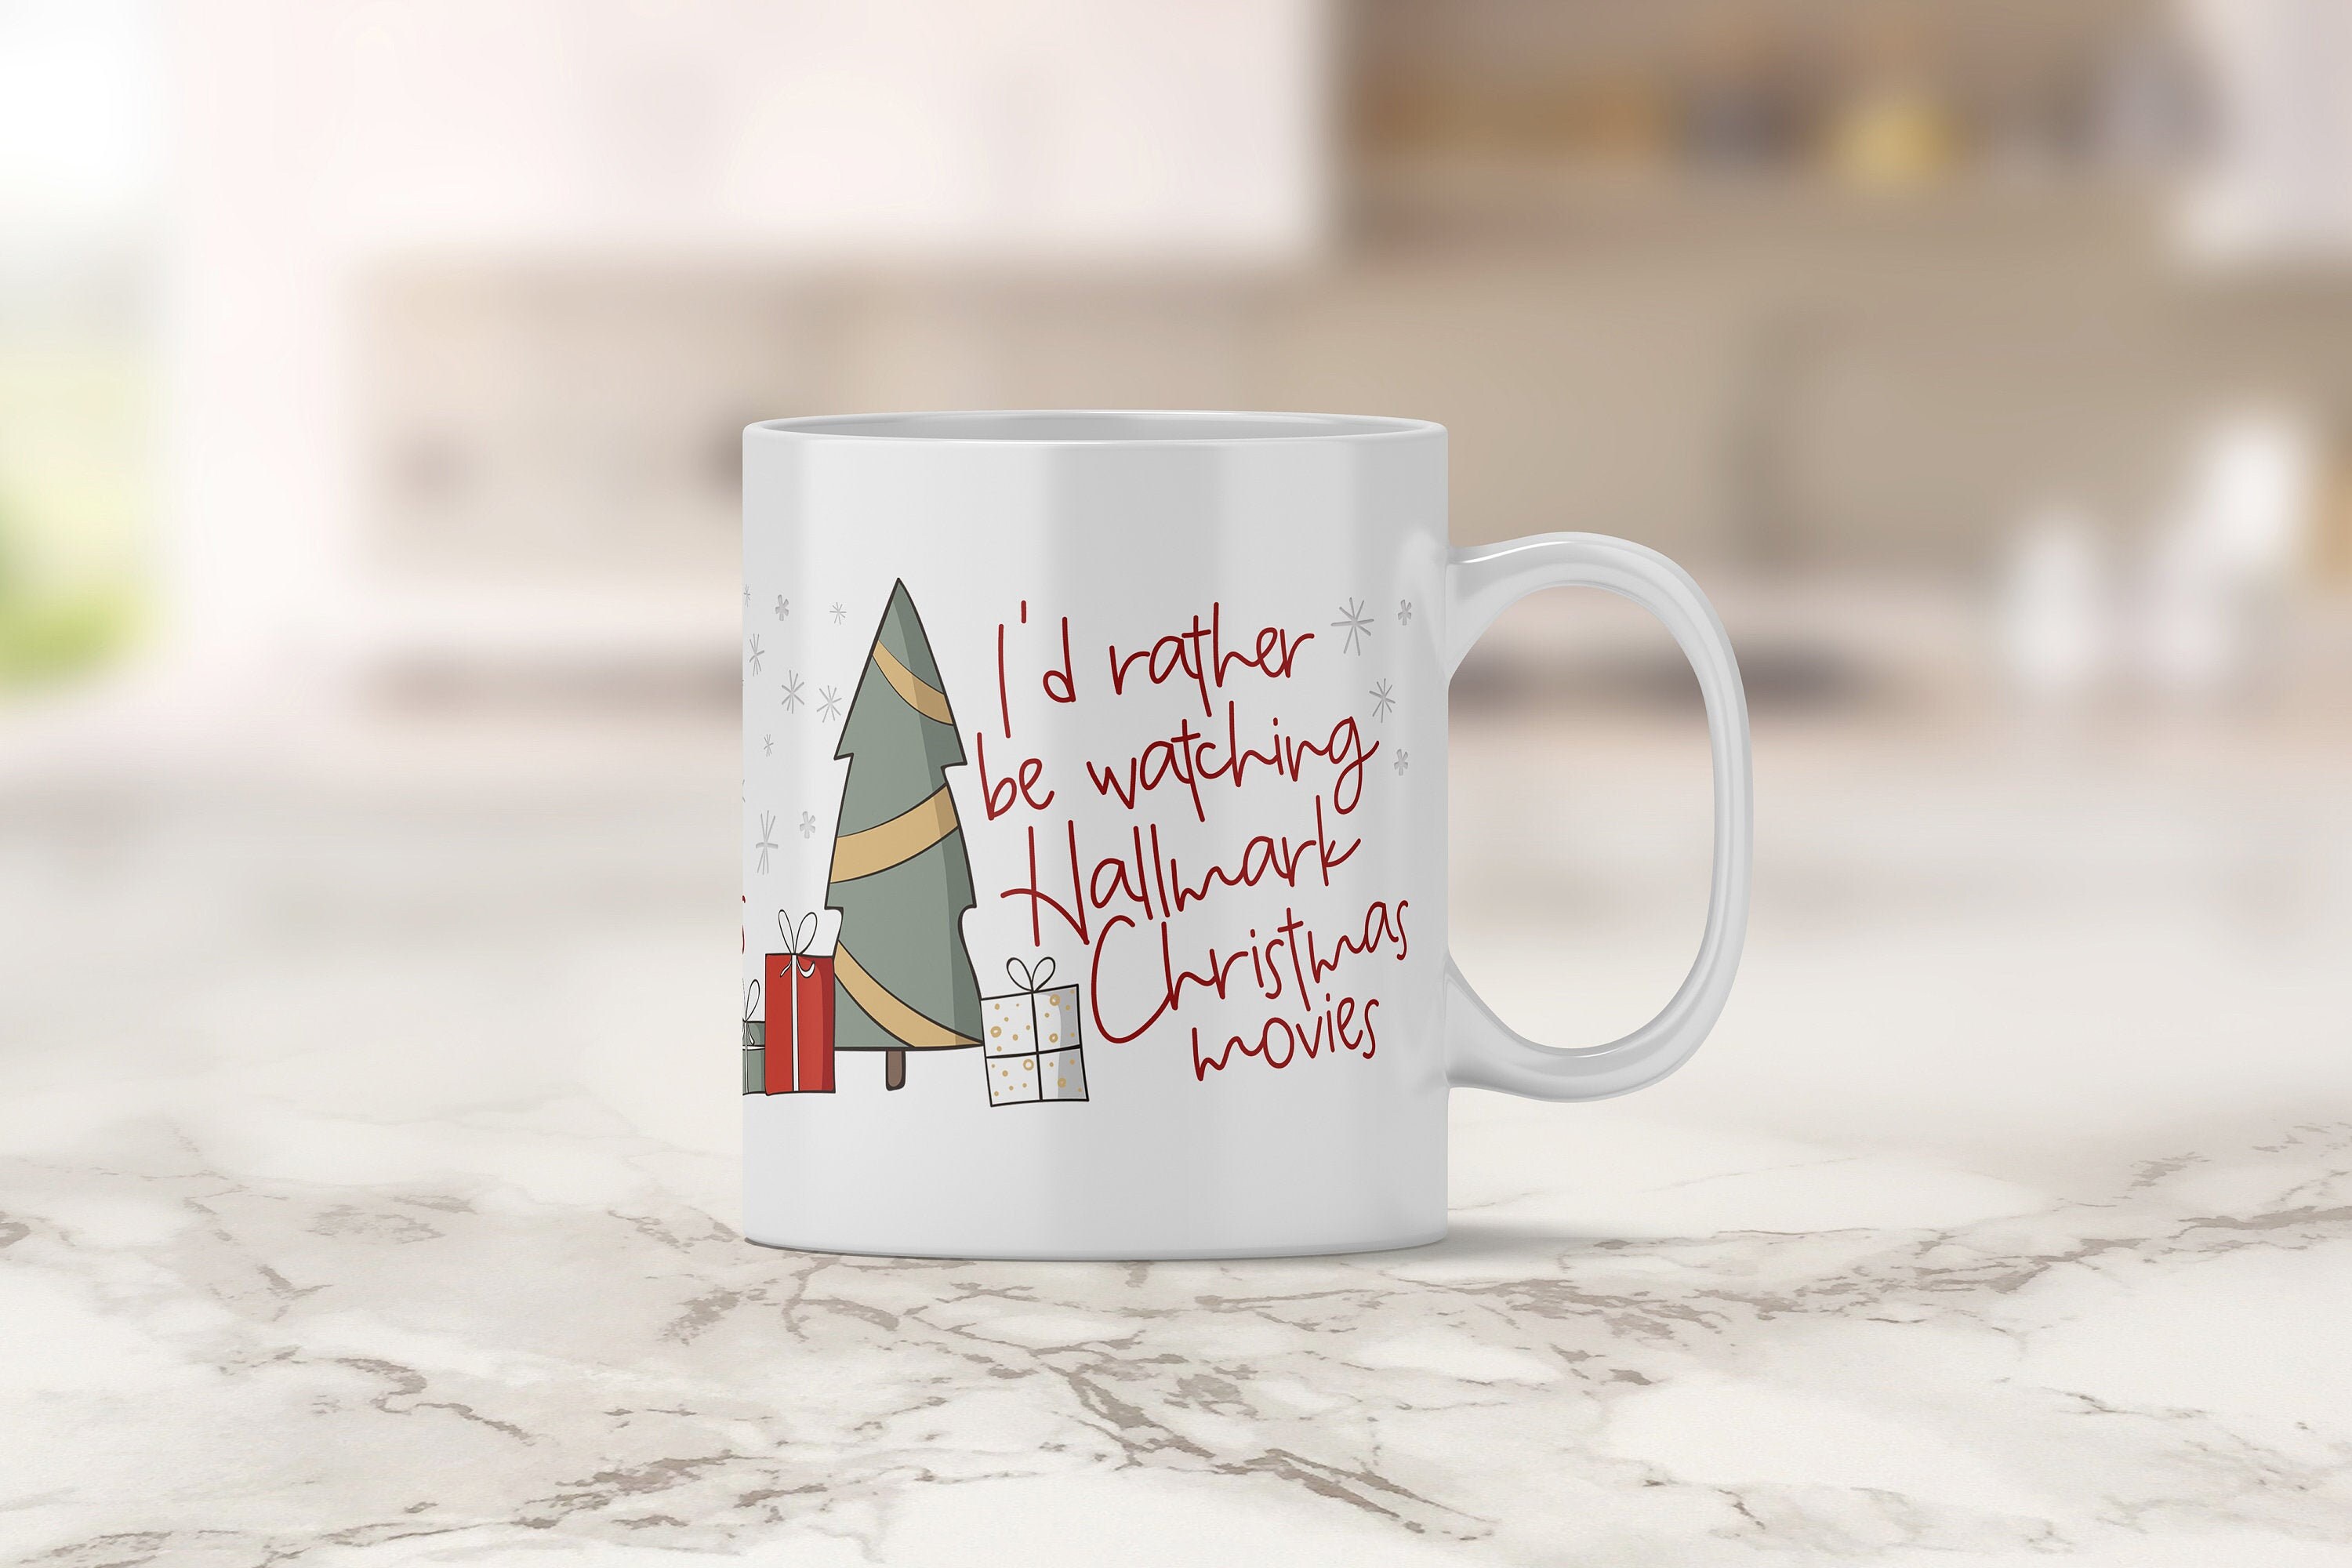 I'd Rather be Watching Christmas Movies Mug - Holiday Mug - Hot Chocolate  Mug - Coffee Mug - Funny Christmas Mug - Funny Holiday Work Mug